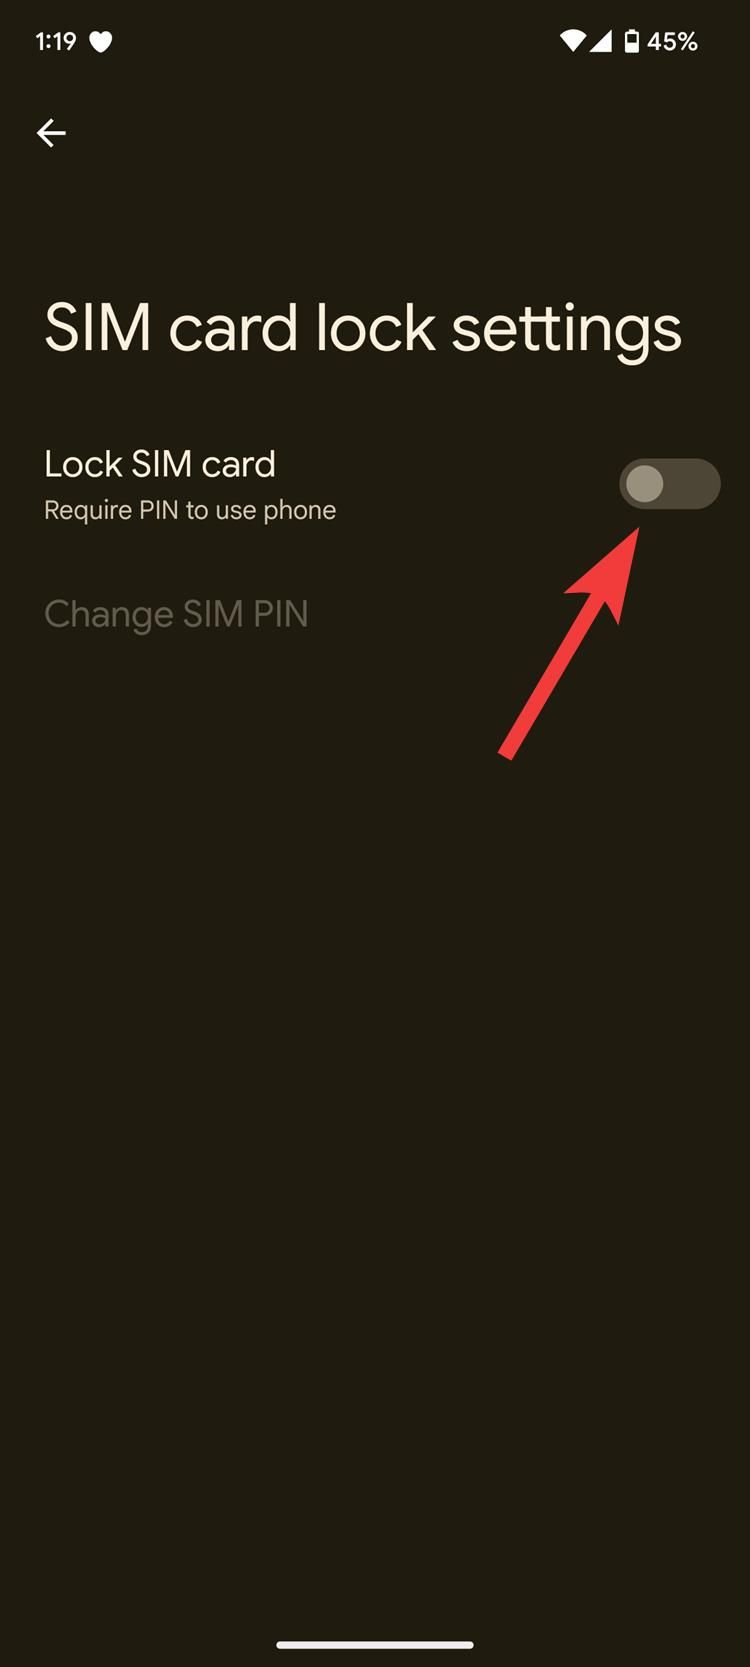 Configurações de bloqueio do cartão SIM em um telefone Google Pixel com uma seta vermelha apontando para o botão Bloquear cartão SIM